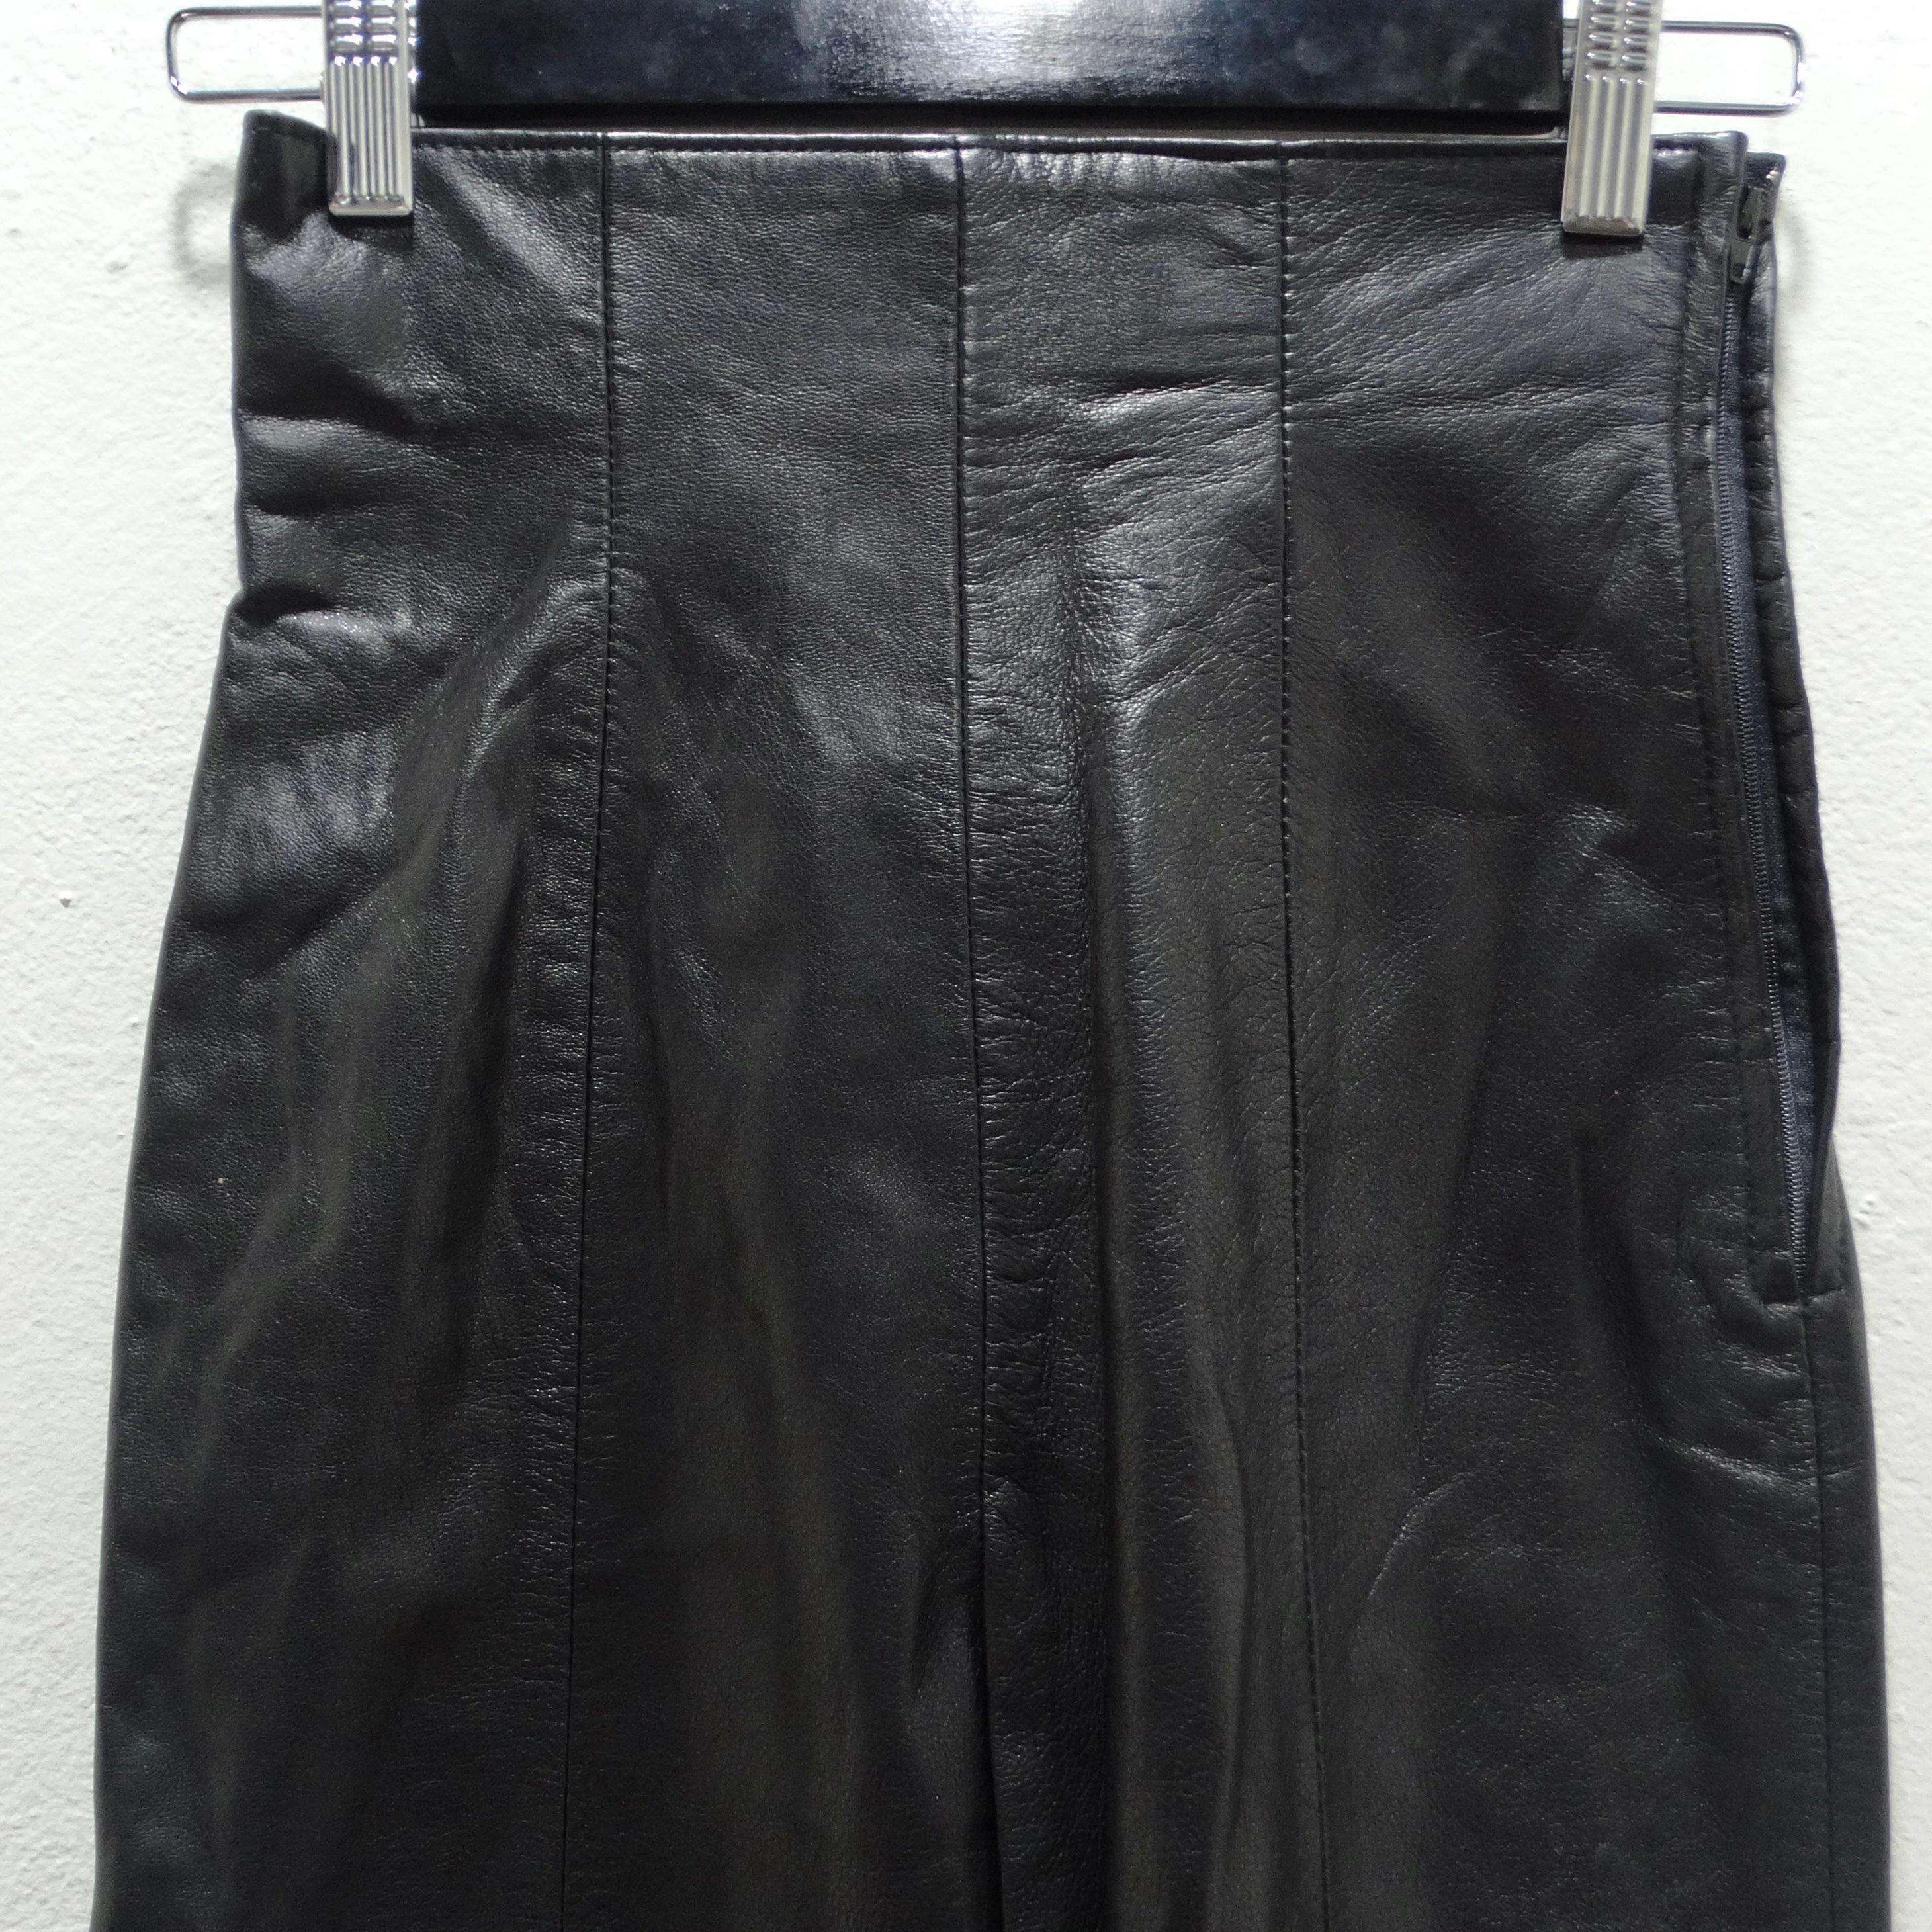 Le pantalon en cuir noir Michael Hoban des années 1980 est une pièce emblématique et polyvalente qui capture l'essence de l'élégance intemporelle avec une touche de sophistication avant-gardiste. Fabriqué avec une attention méticuleuse aux détails,